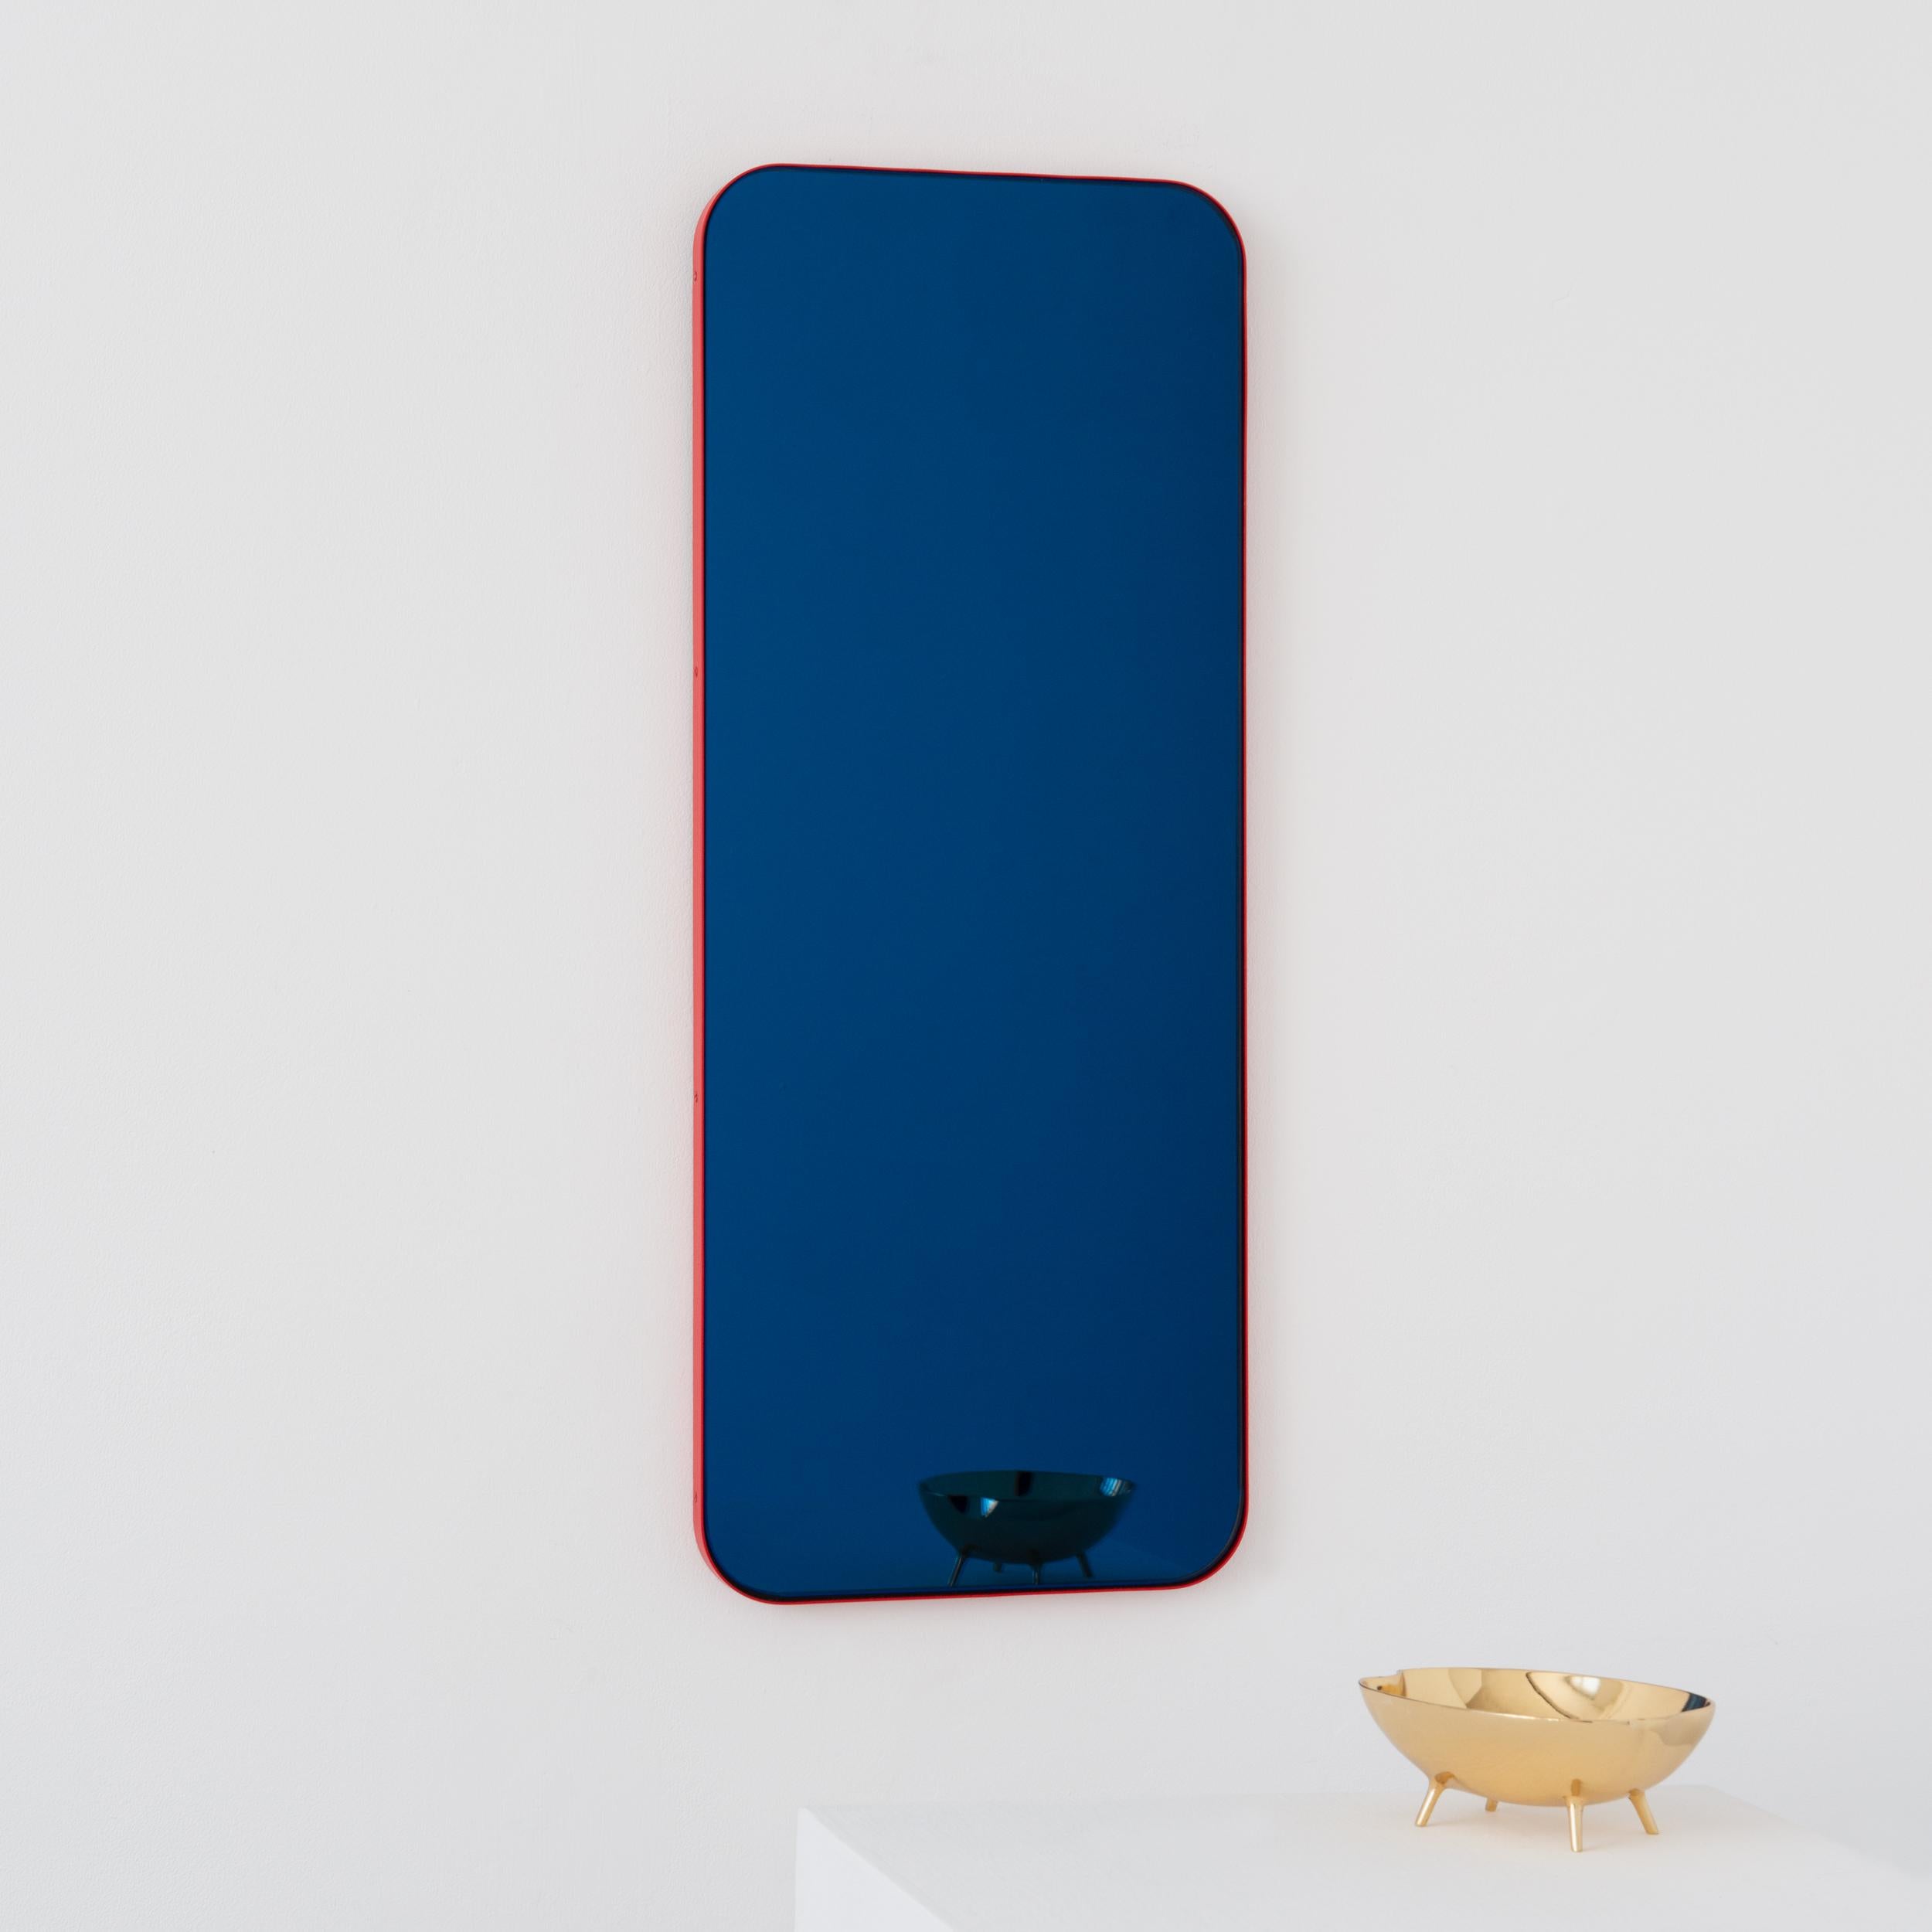 Miroir rectangulaire contemporain teinté de bleu avec un cadre rouge moderne. Une partie de la charmante collection Quadris, conçue et fabriquée à la main à Londres, au Royaume-Uni. 

Fourni avec une barre en z spécialisée pour une installation